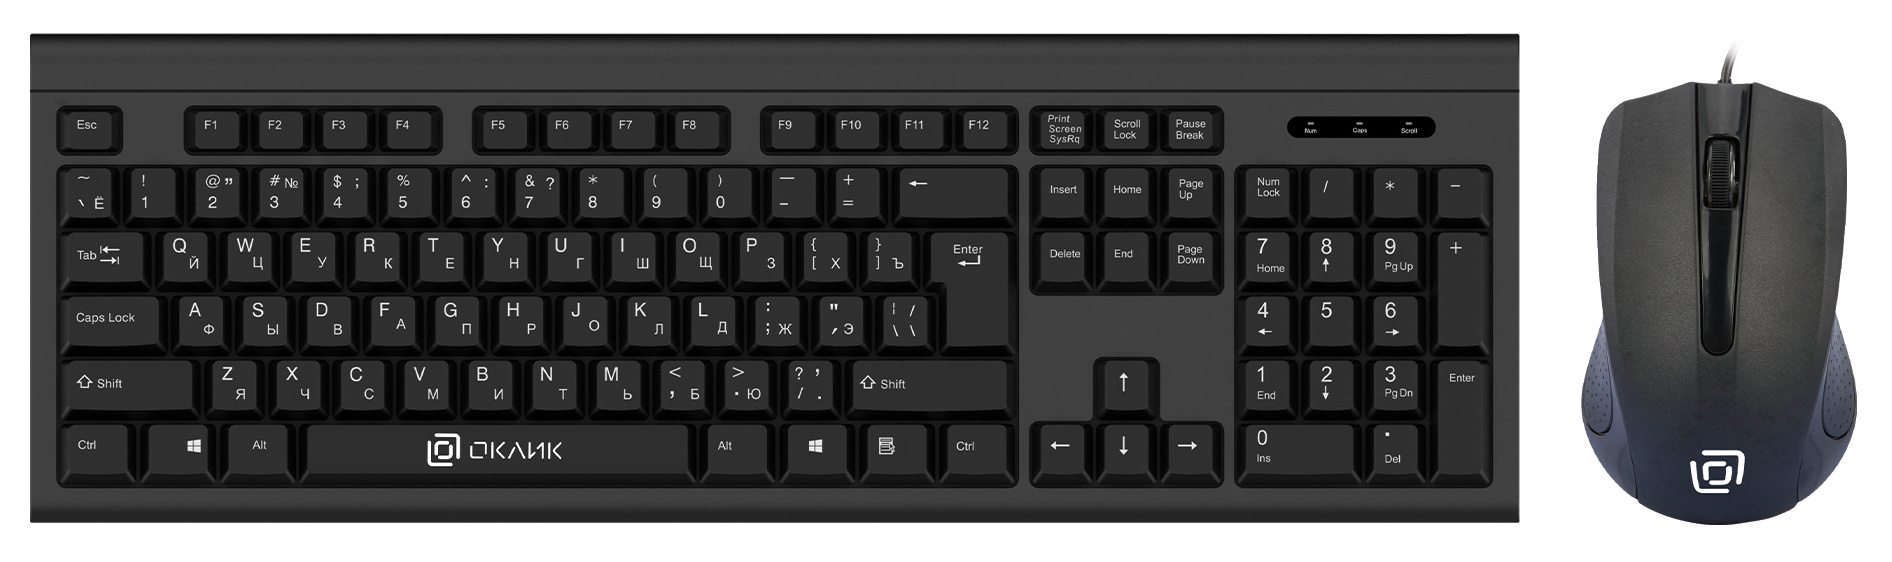 Клавиатура+мышь Oklick 600M клав:черный мышь:черный USB